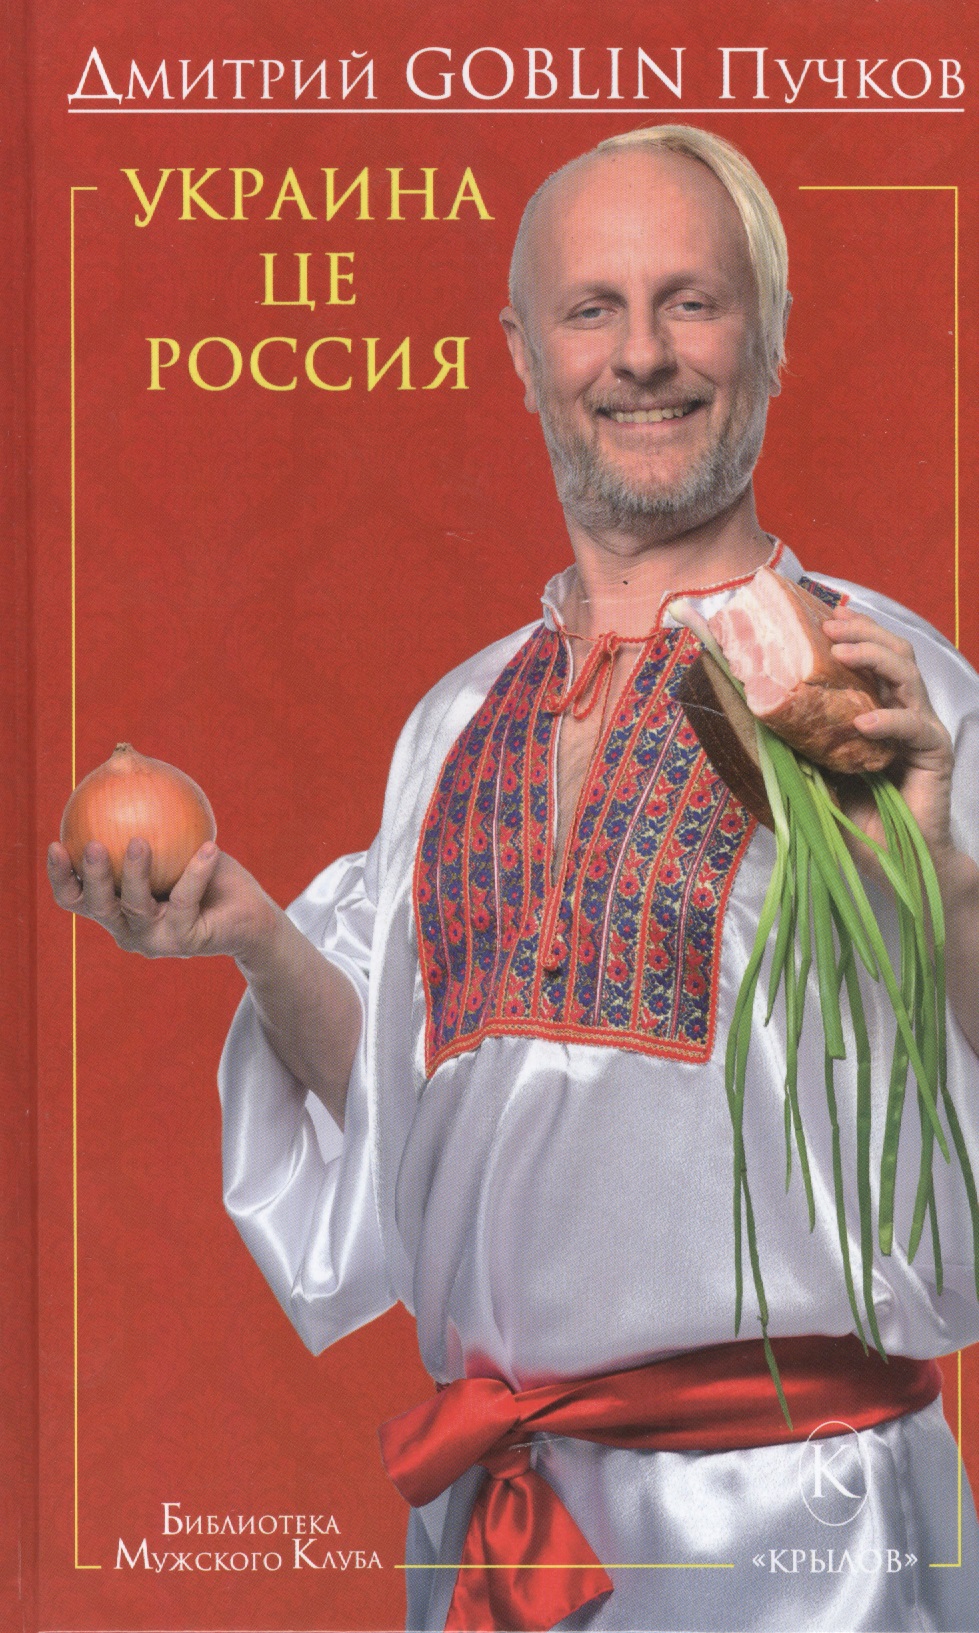 Пучков Дмитрий Goblin - Украина це Россия